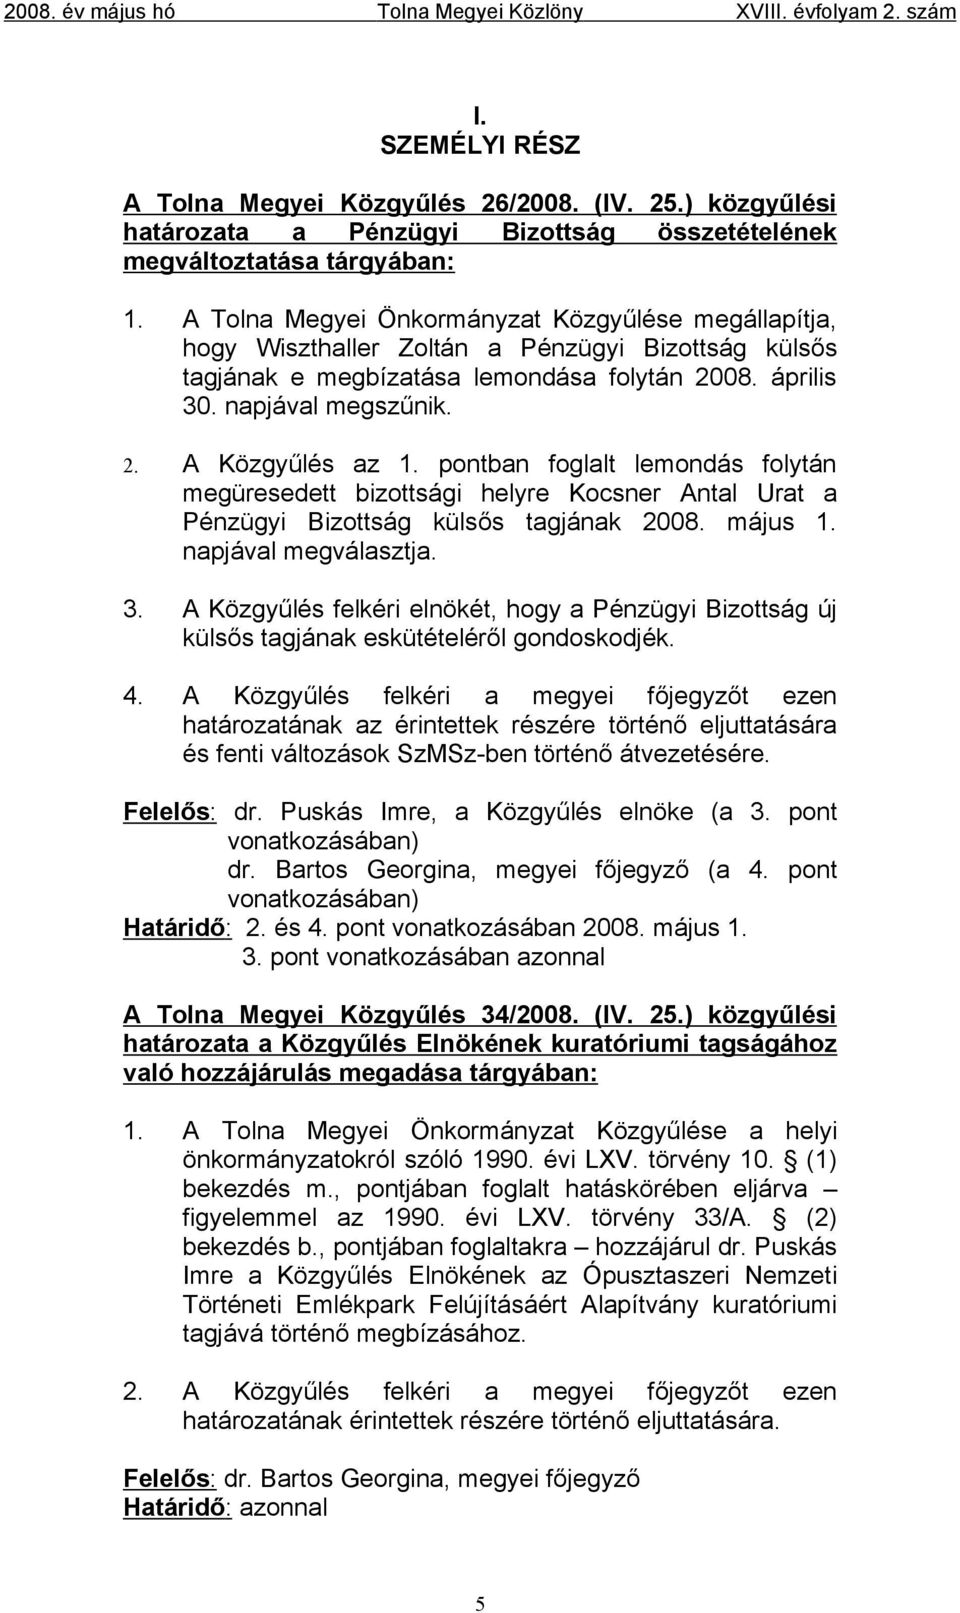 pontban foglalt lemondás folytán megüresedett bizottsági helyre Kocsner Antal Urat a Pénzügyi Bizottság külsős tagjának 2008. május 1. napjával megválasztja. 3.